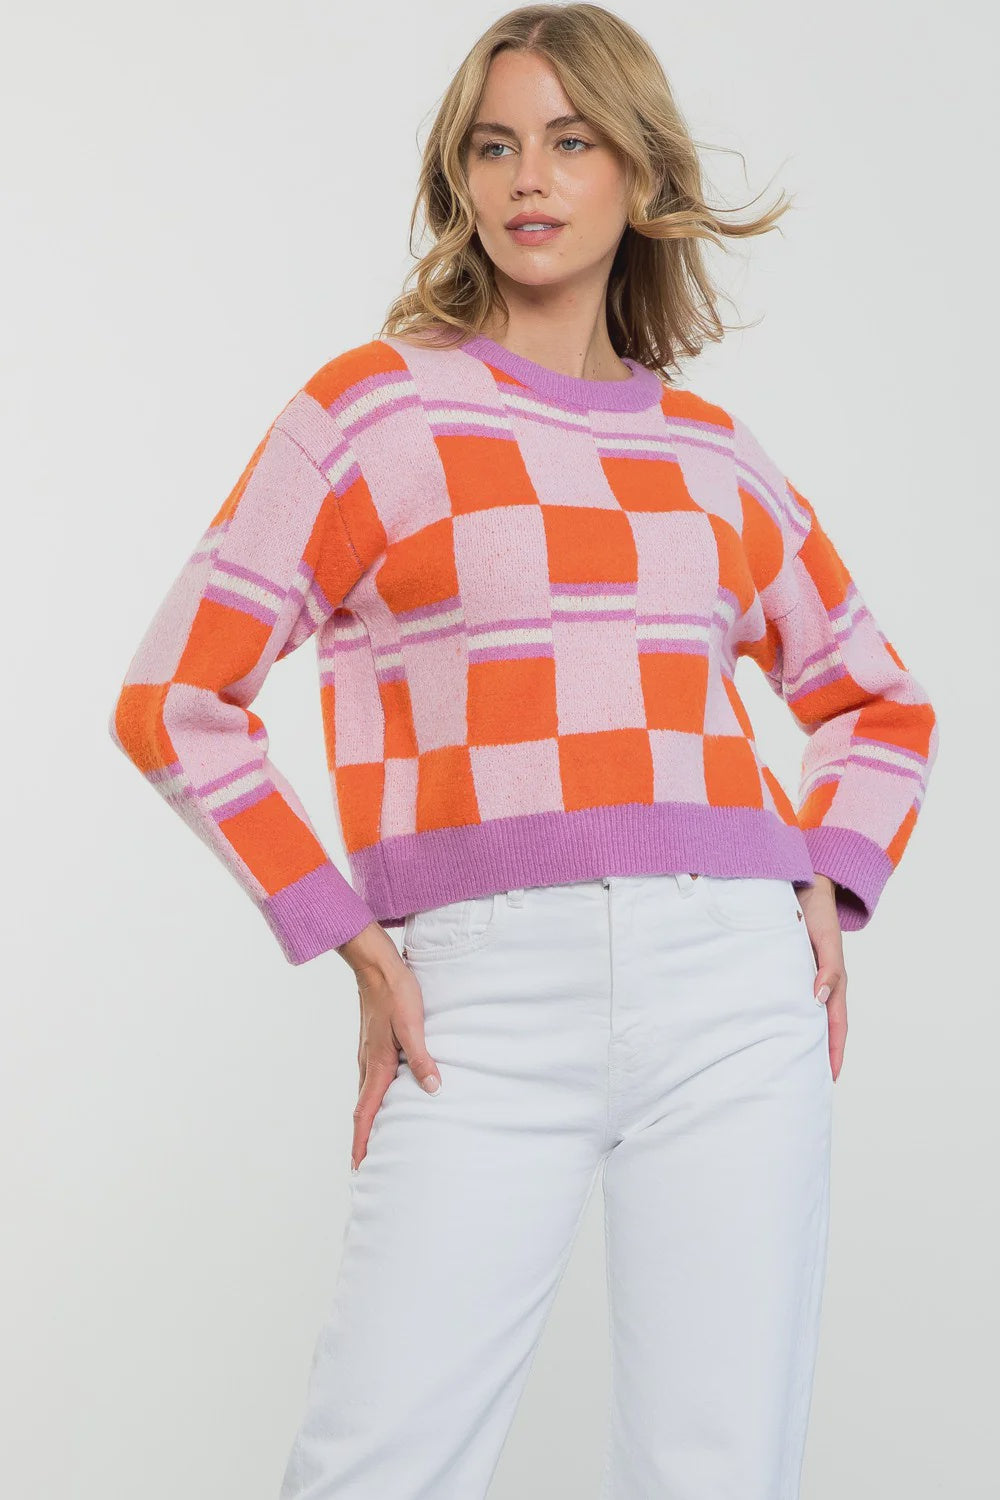 Sunset Avenue Sweater